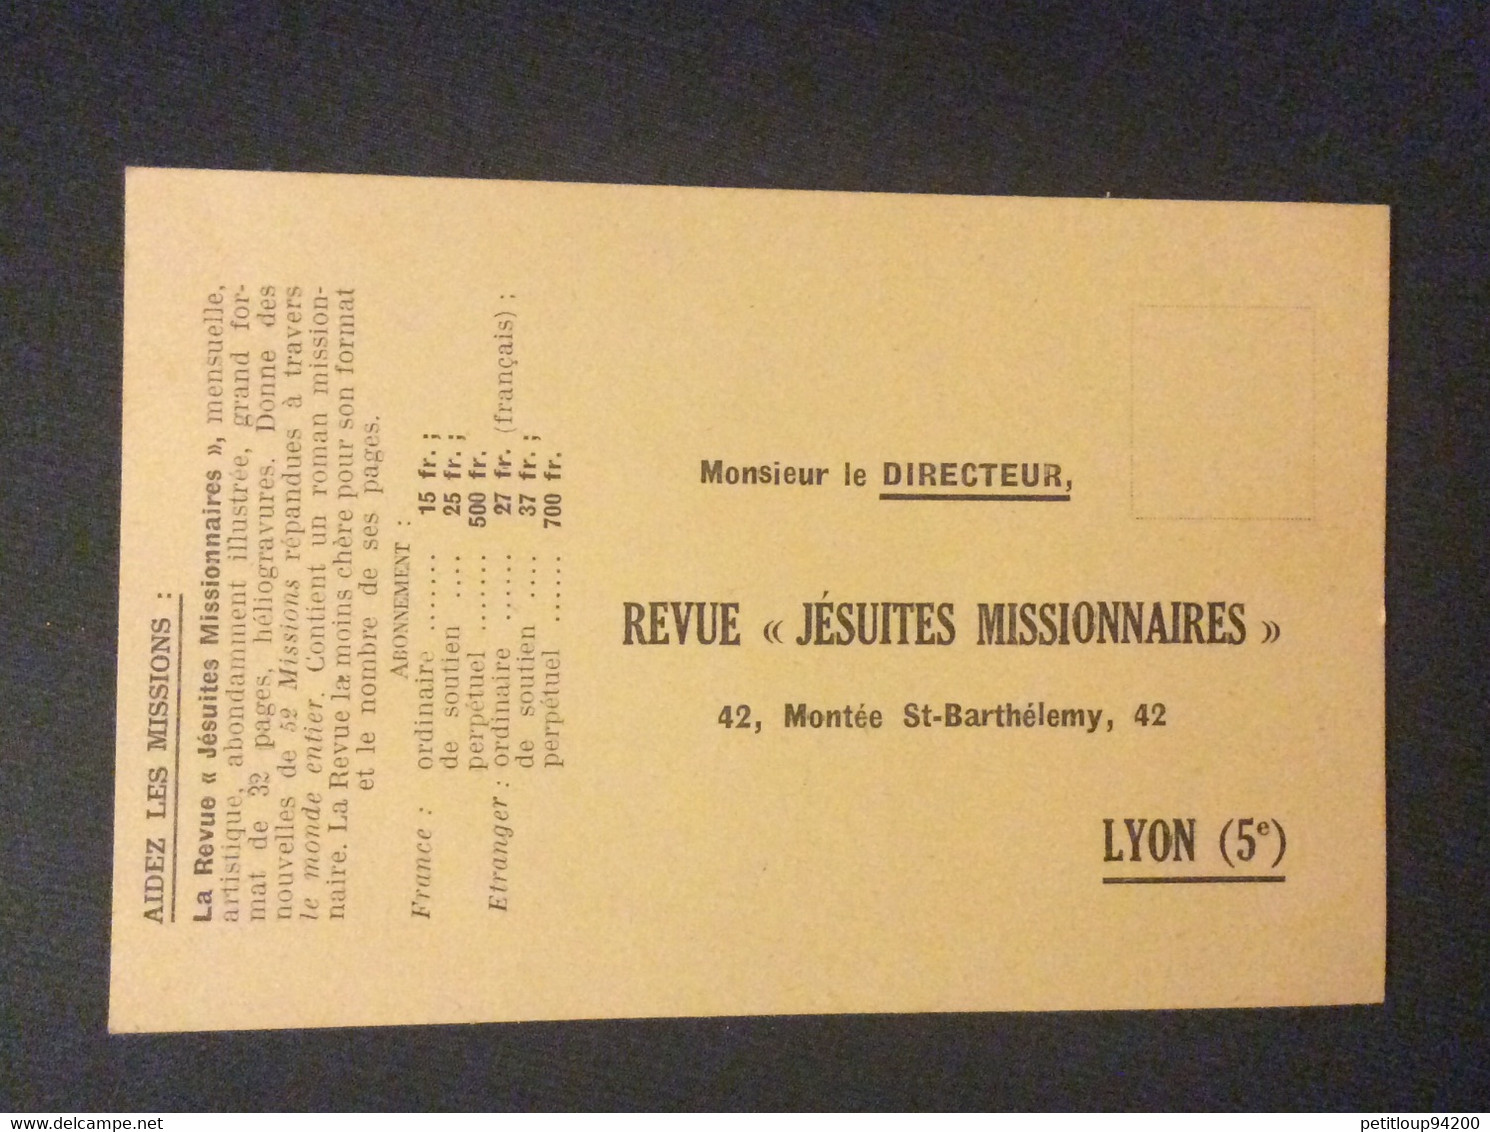 COUPON RÉPONSE  Revue “Jesuites Missionnaires”  LYON  Annee 1935 - Antwoordbons